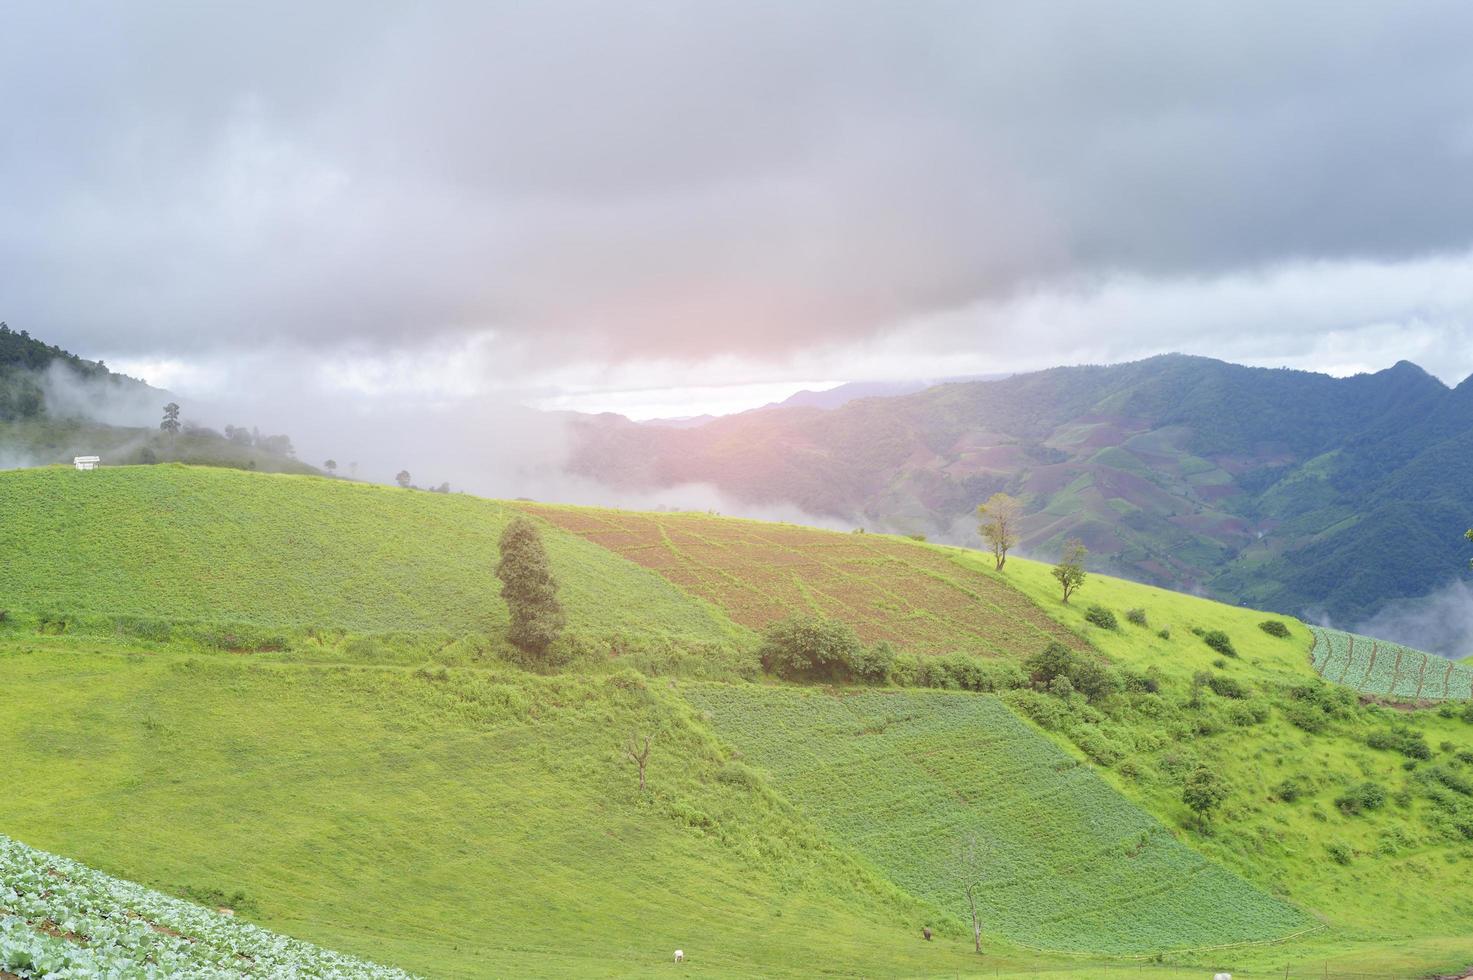 belle vue sur la montagne verte en saison des pluies, climat tropical. photo